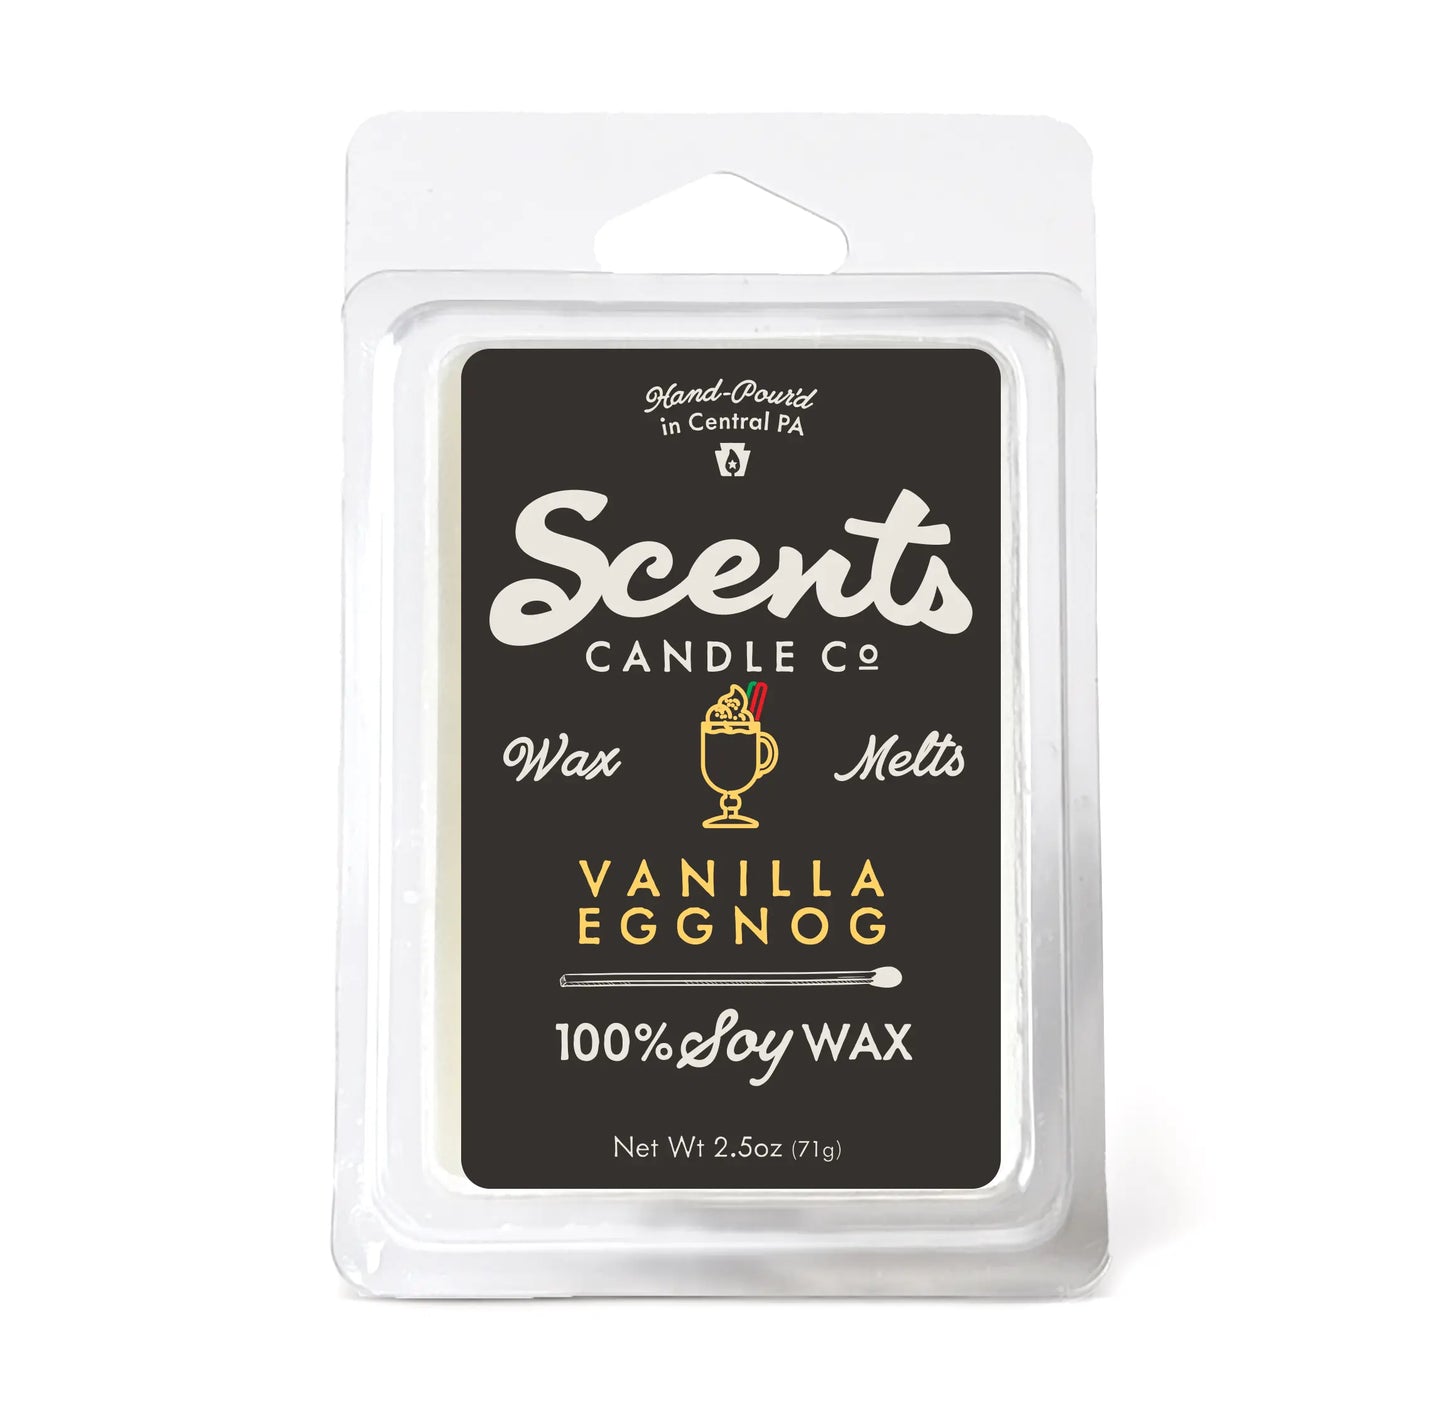 Scents Candle Co. Vanilla Eggnog Wax Melt